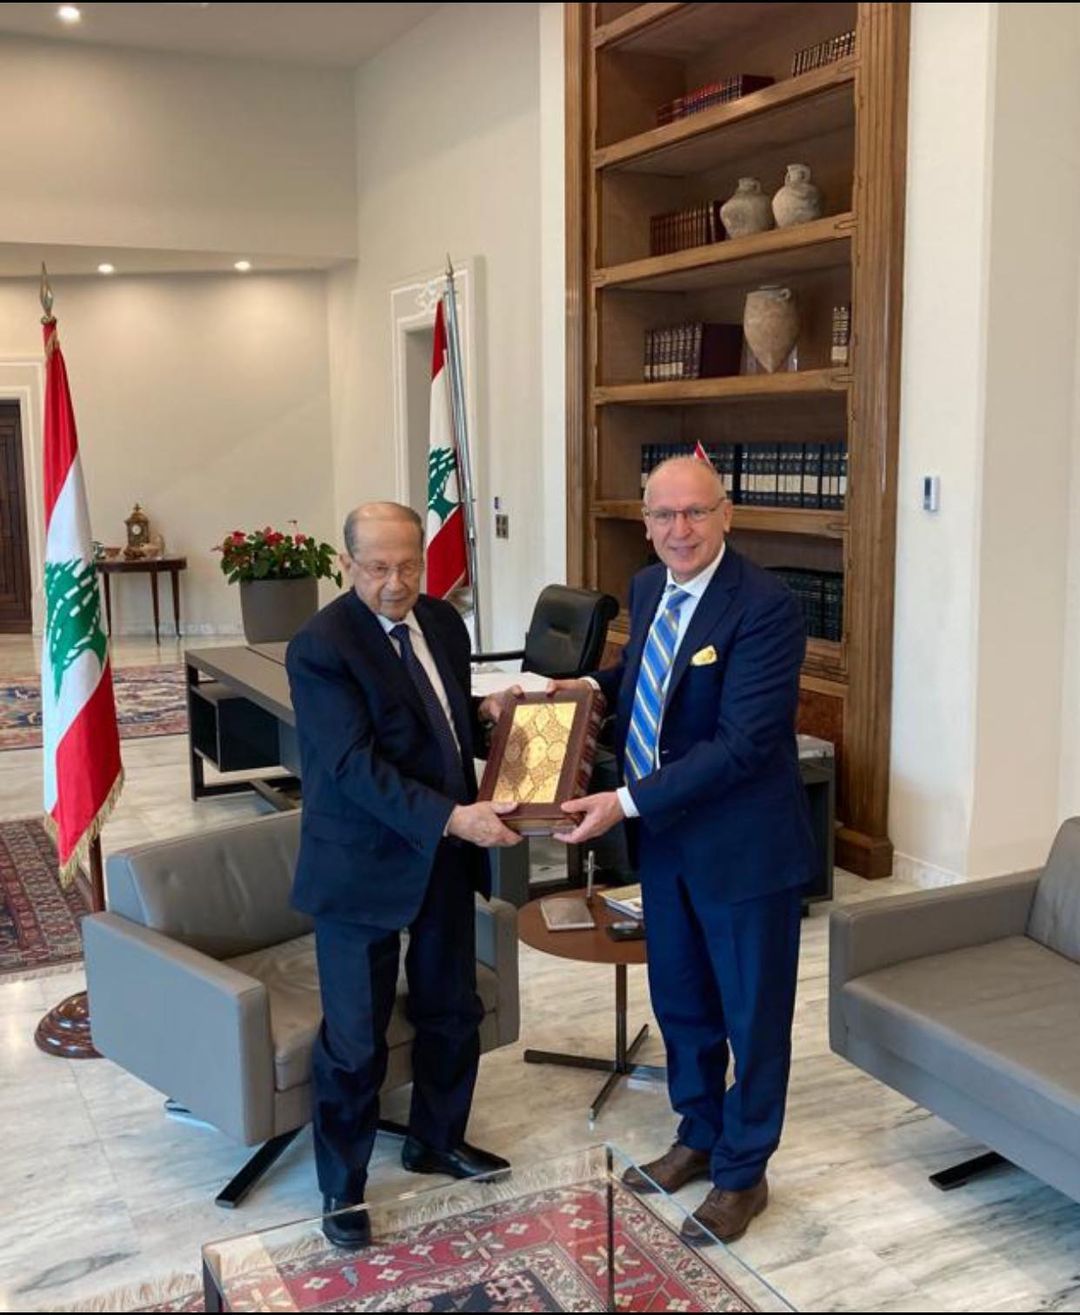 Ігор Осташ нещодавно подарував факсиміле Мазепинського  Євангелія президенту Лівану Мішелю Ауну.